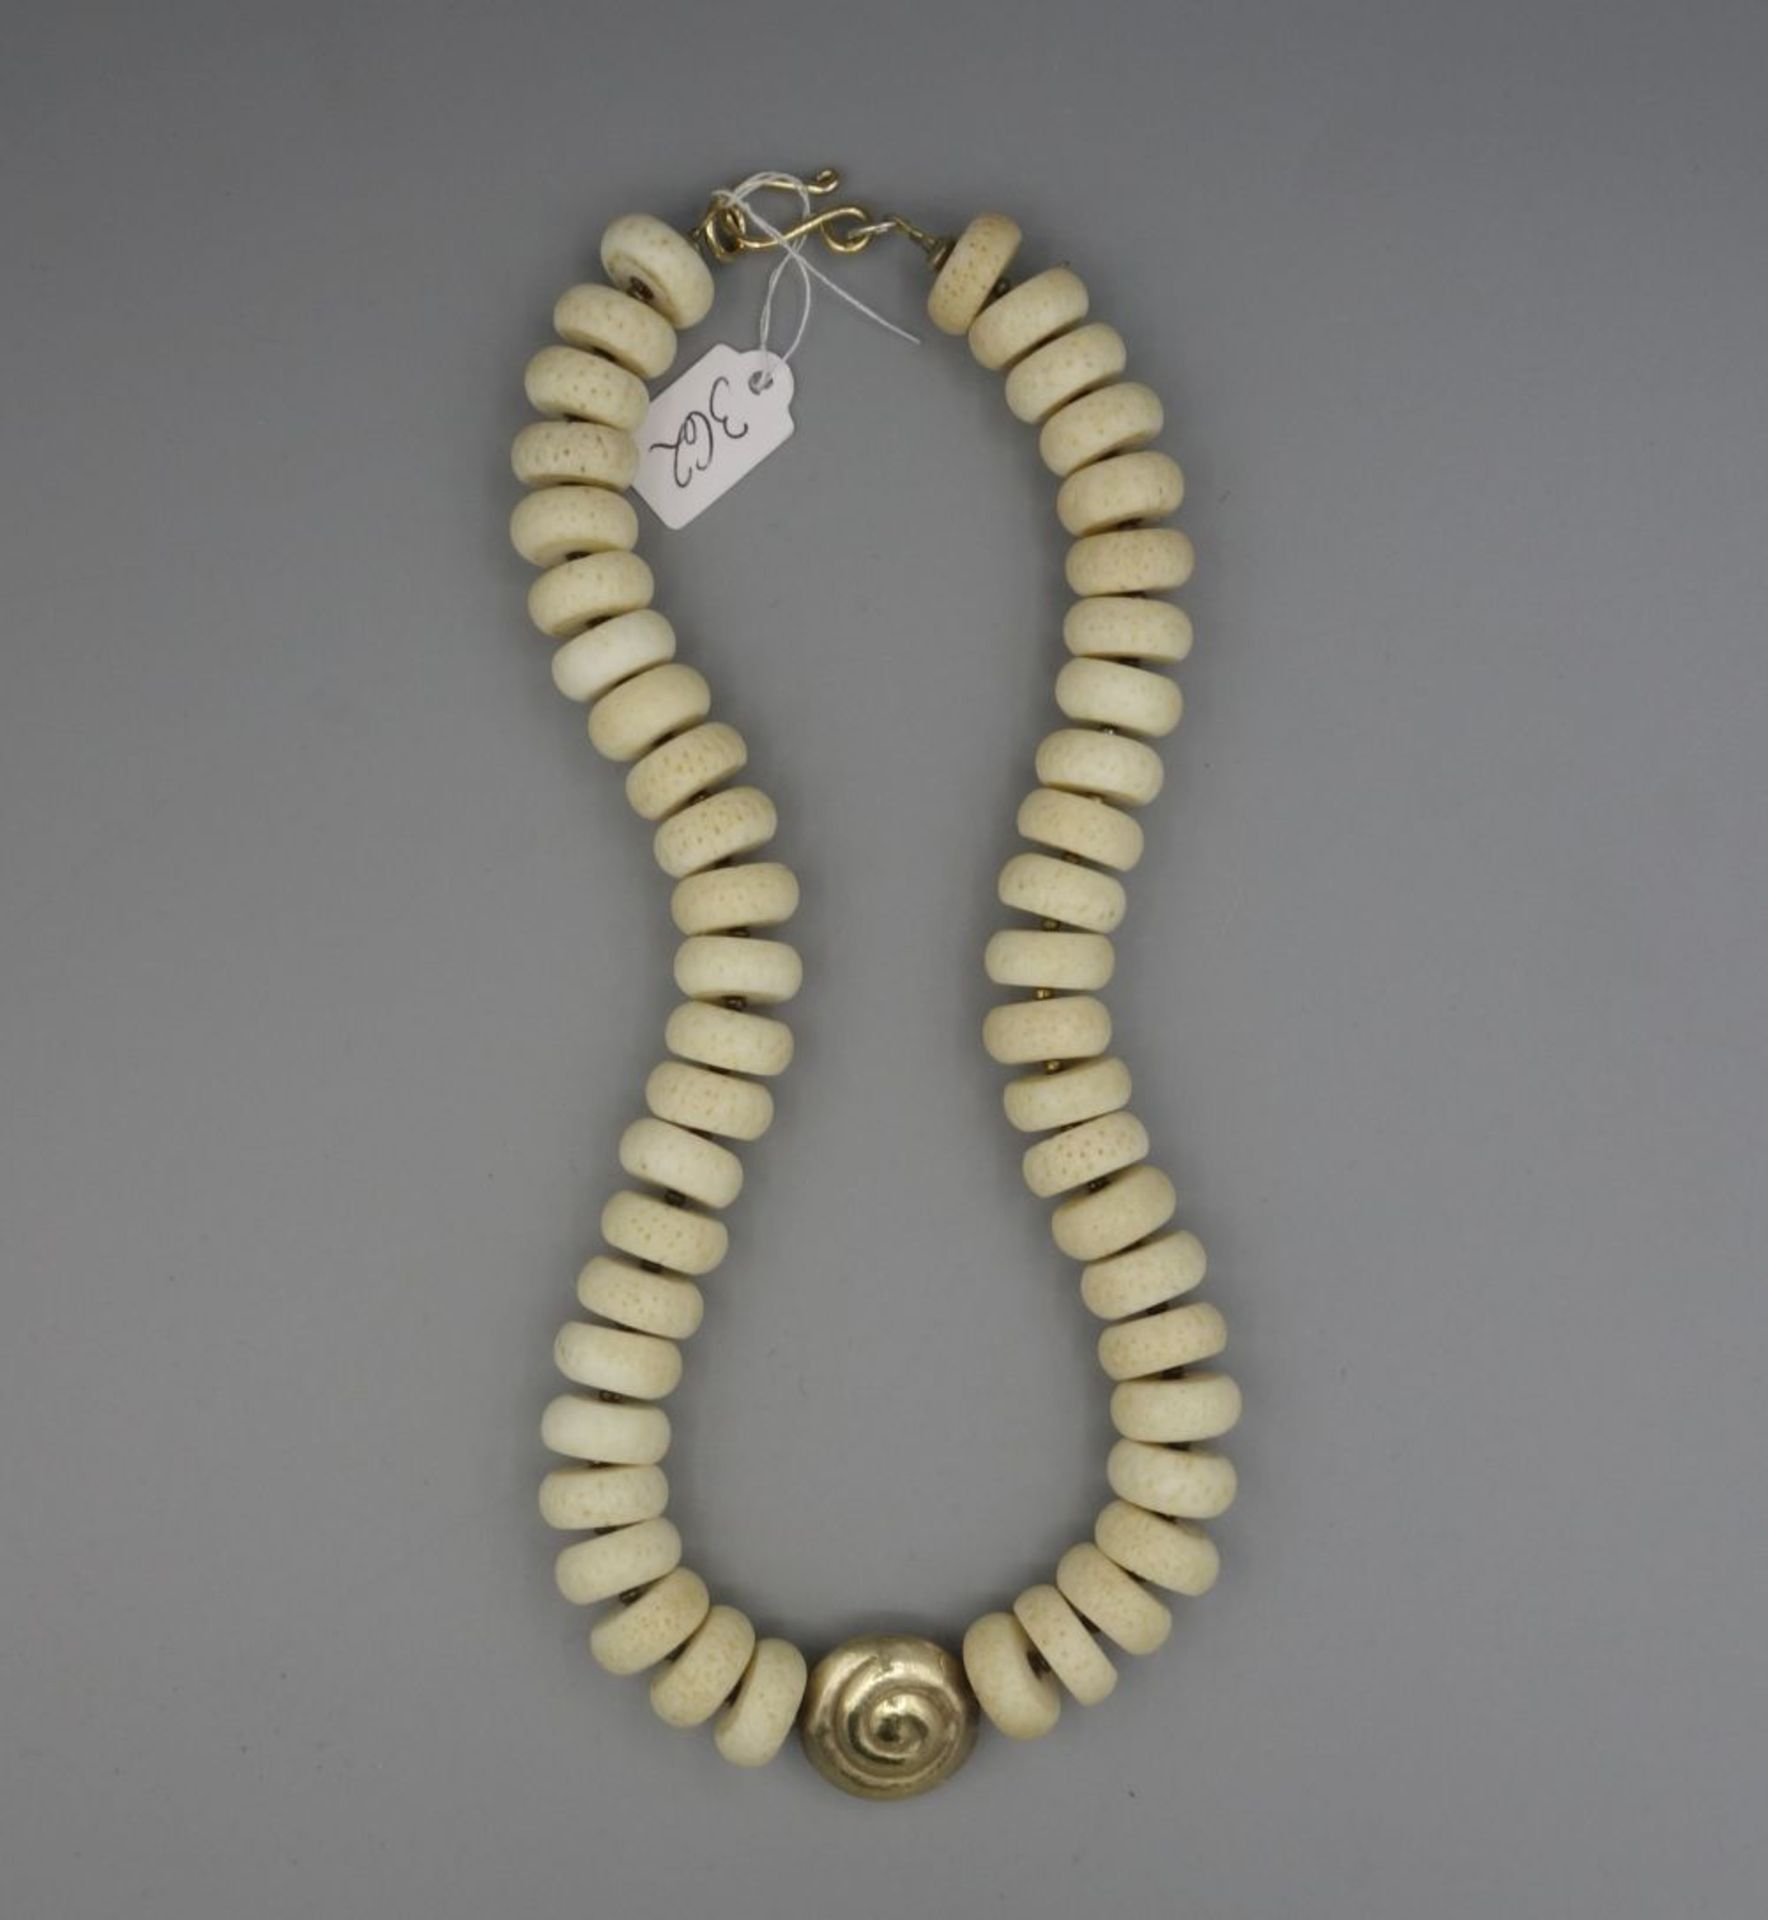 KETTE / BEINKETTE / necklace, mit gold- und silberfarbenen Metallanteilen. Im Zentrum spiral- oder